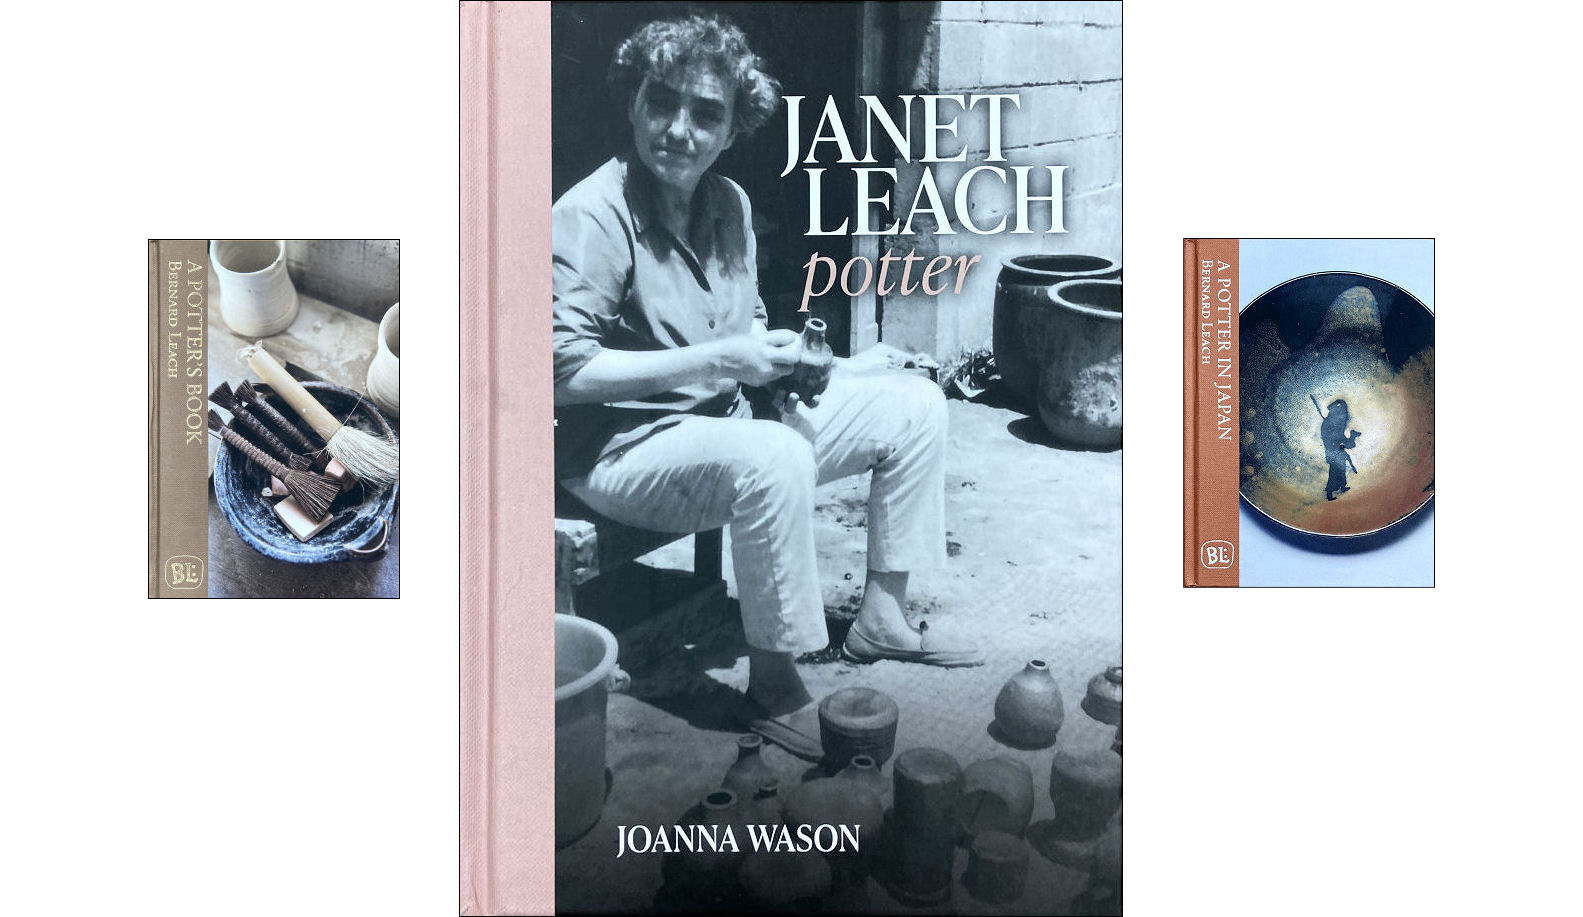 Janet Leach by Joanna Wason